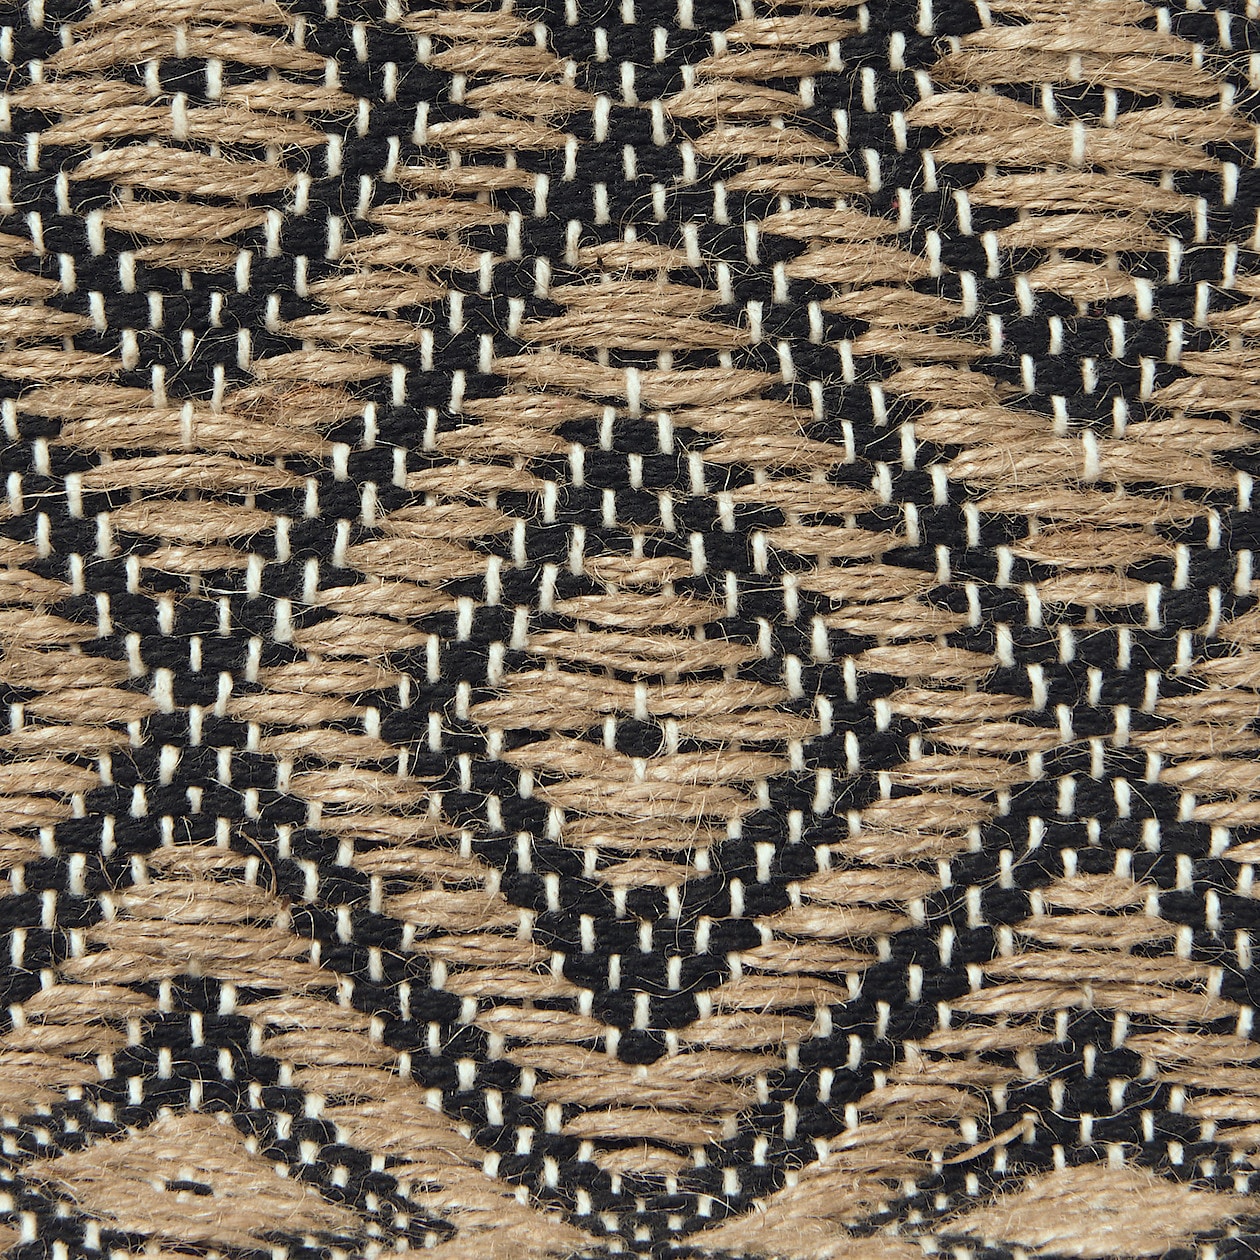 インドの手織り ミニトートバッグ | 無印良品